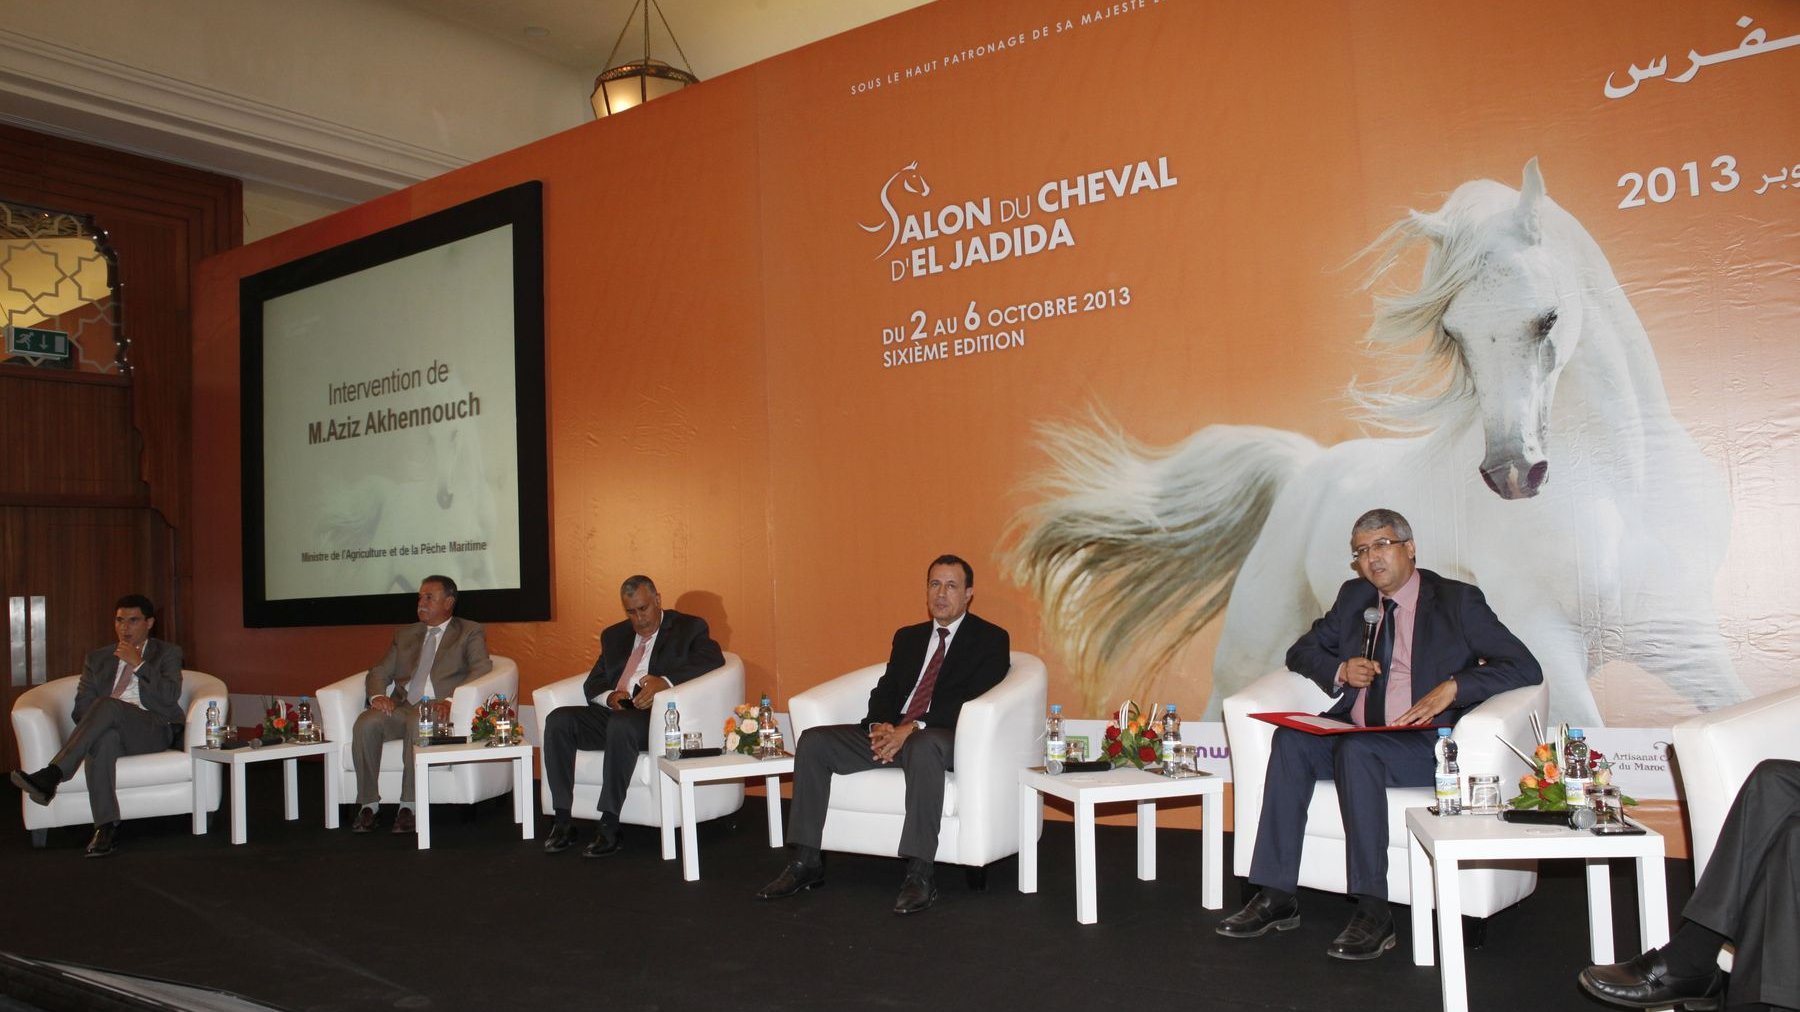 La conférence de presse du Salon du cheval a rassemblé plusieurs personnalités de la région d'El Jadida
